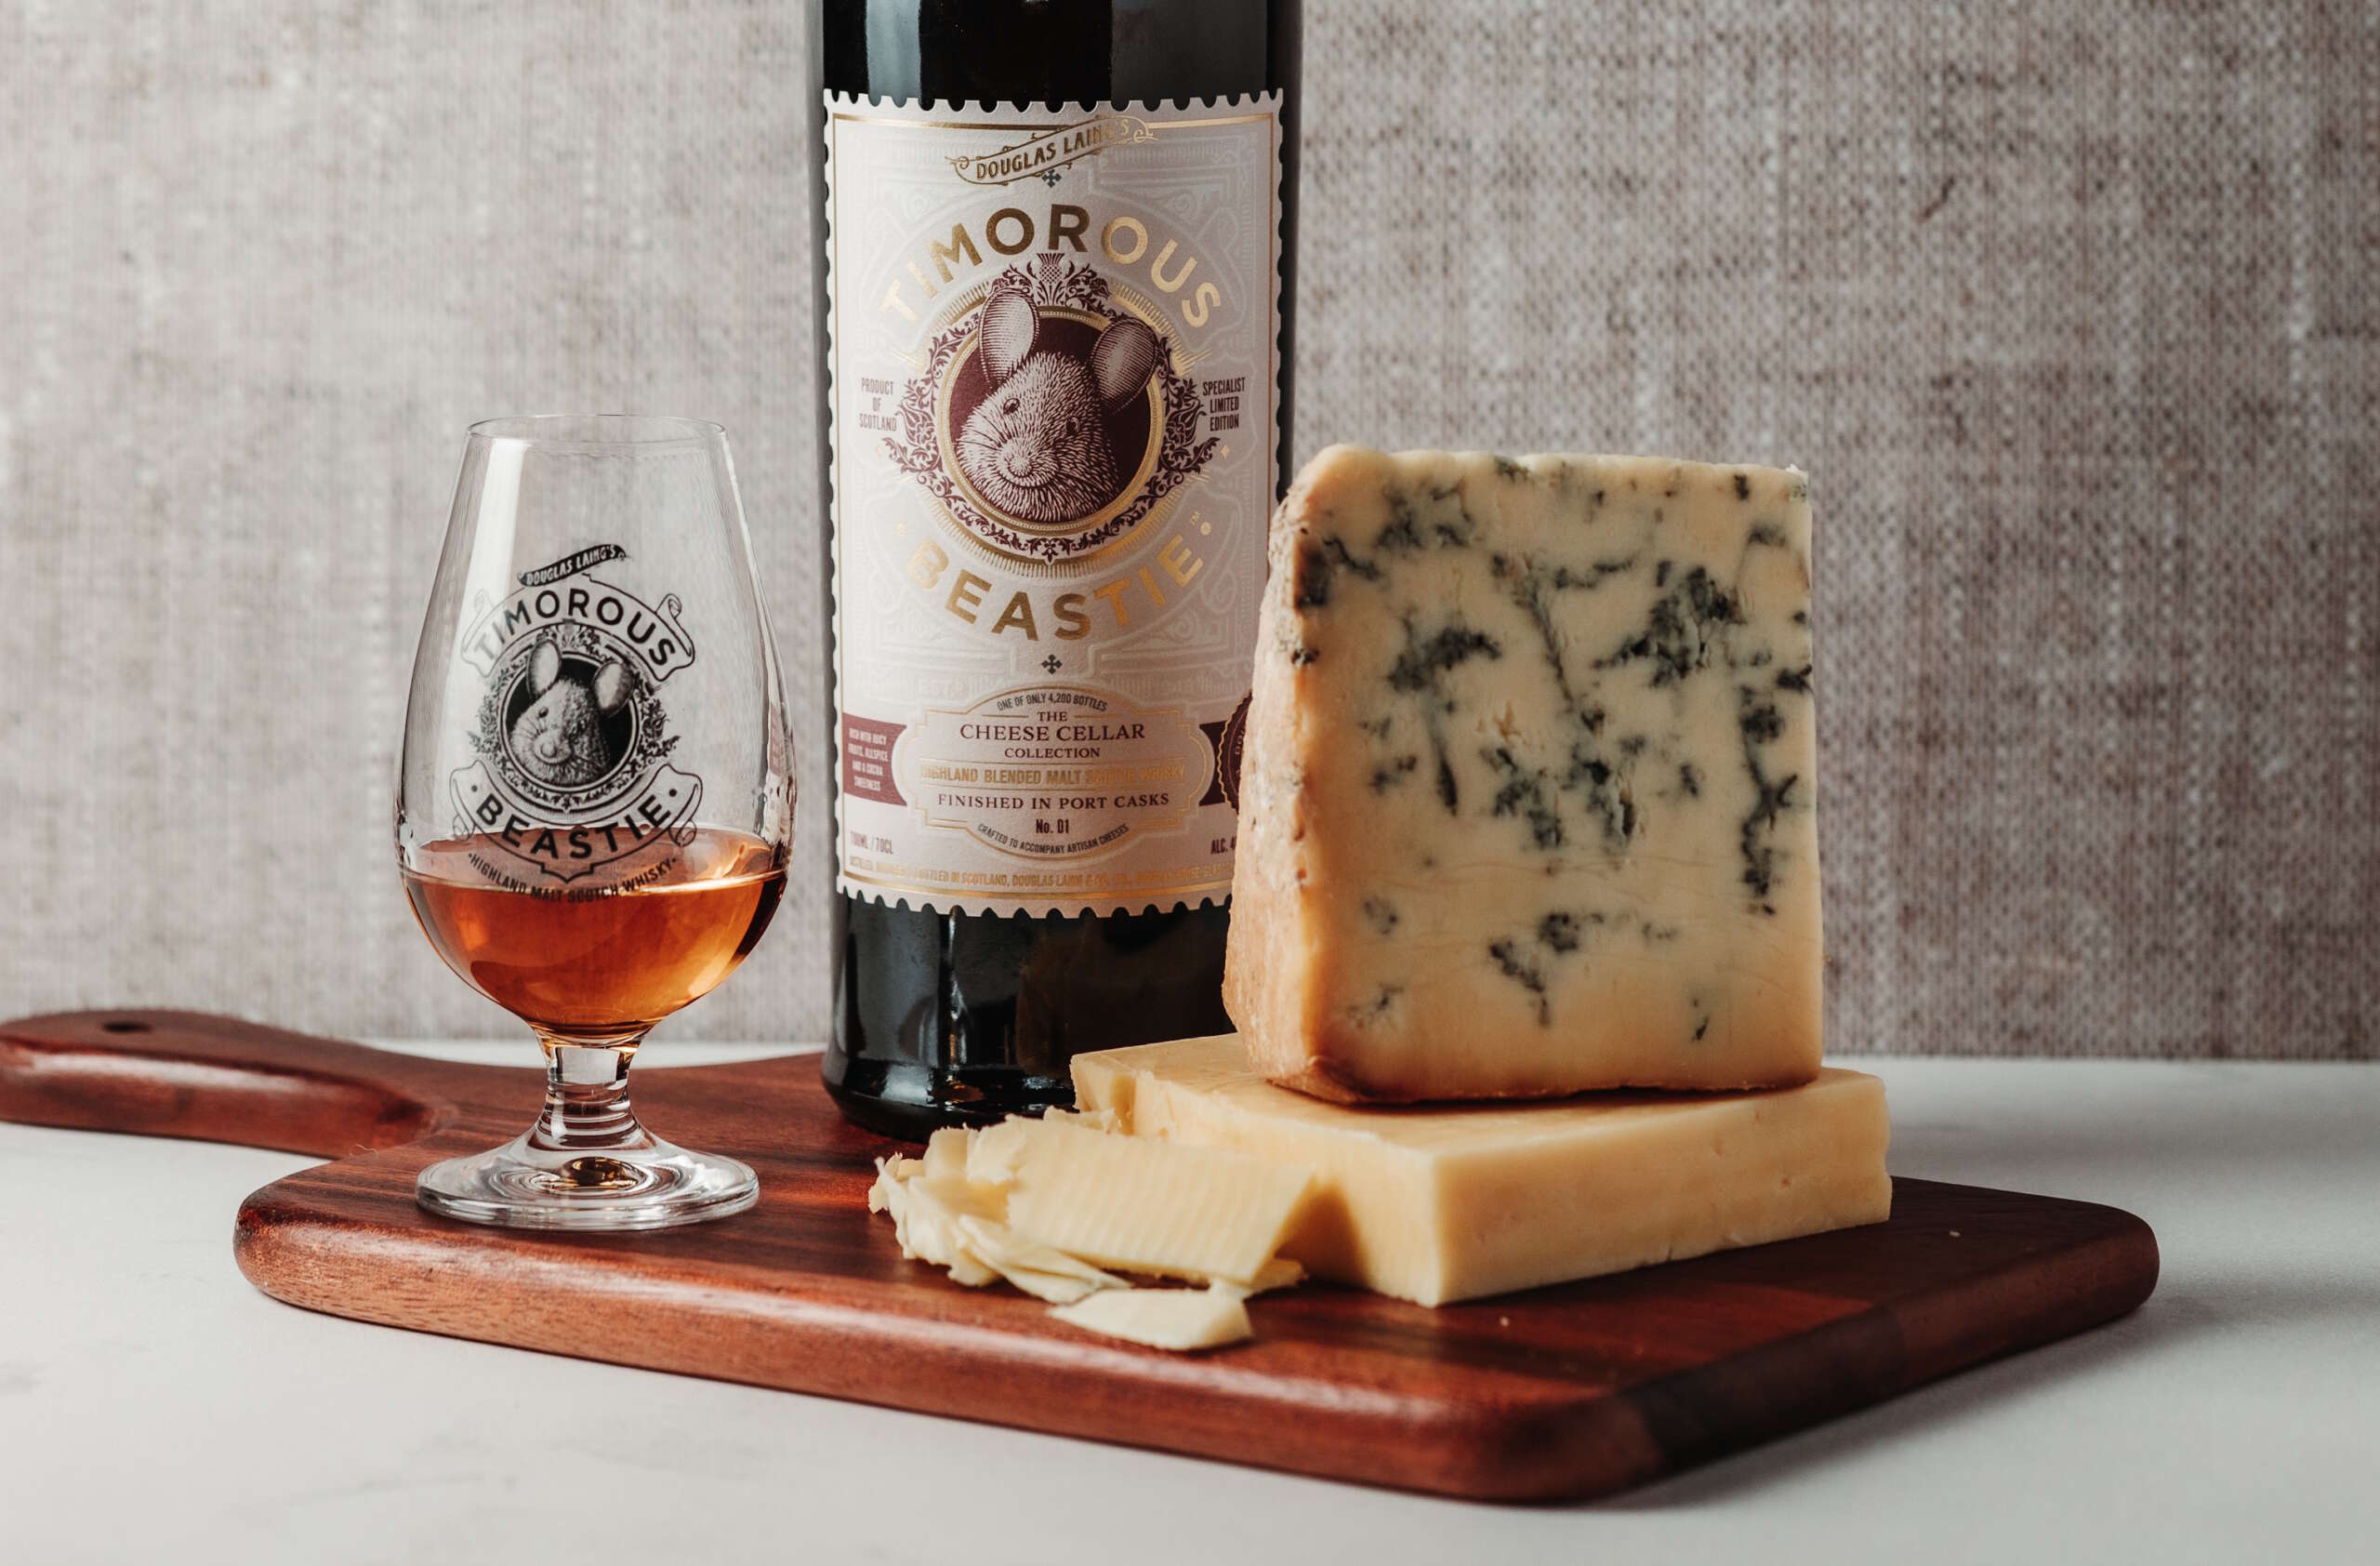 ダグラス・レインが青かびチーズにピッタリのビースティ・チーズ・セラー・コレクションを発売